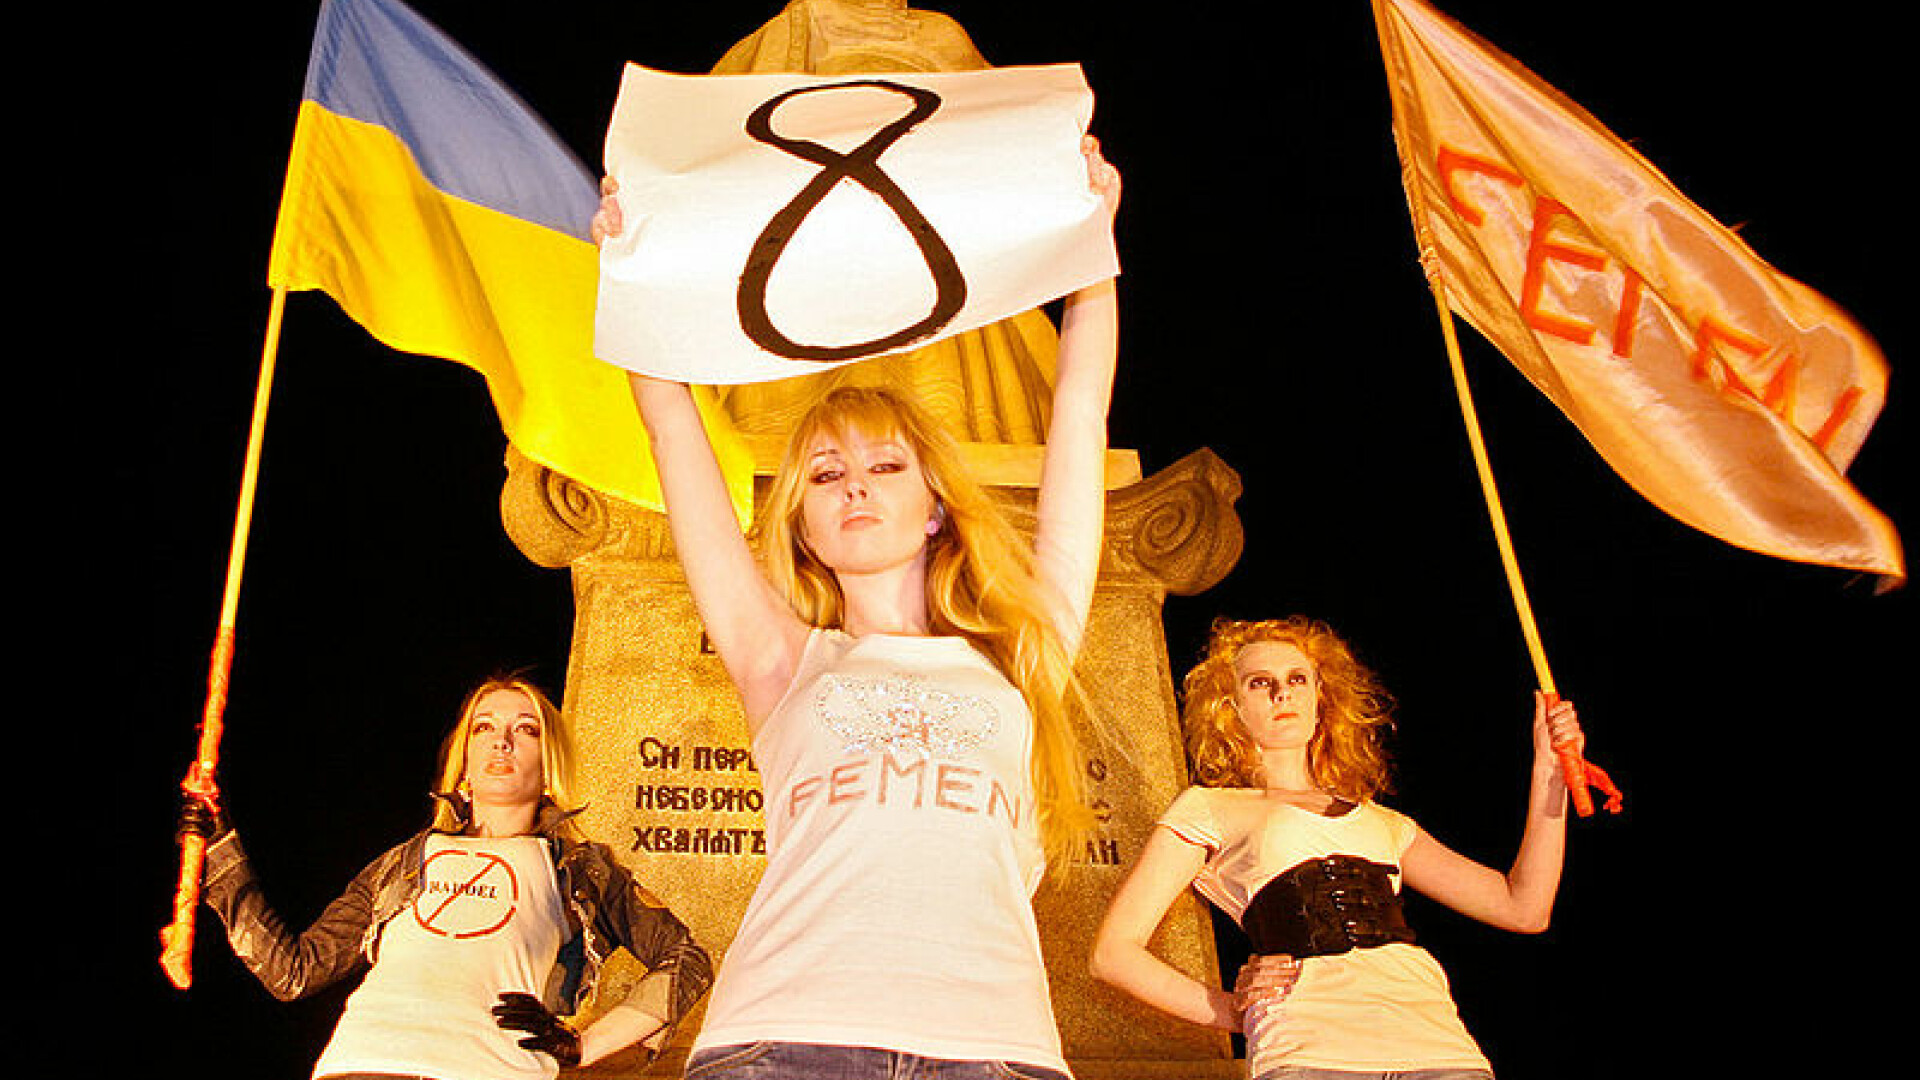 8 martie, Femen